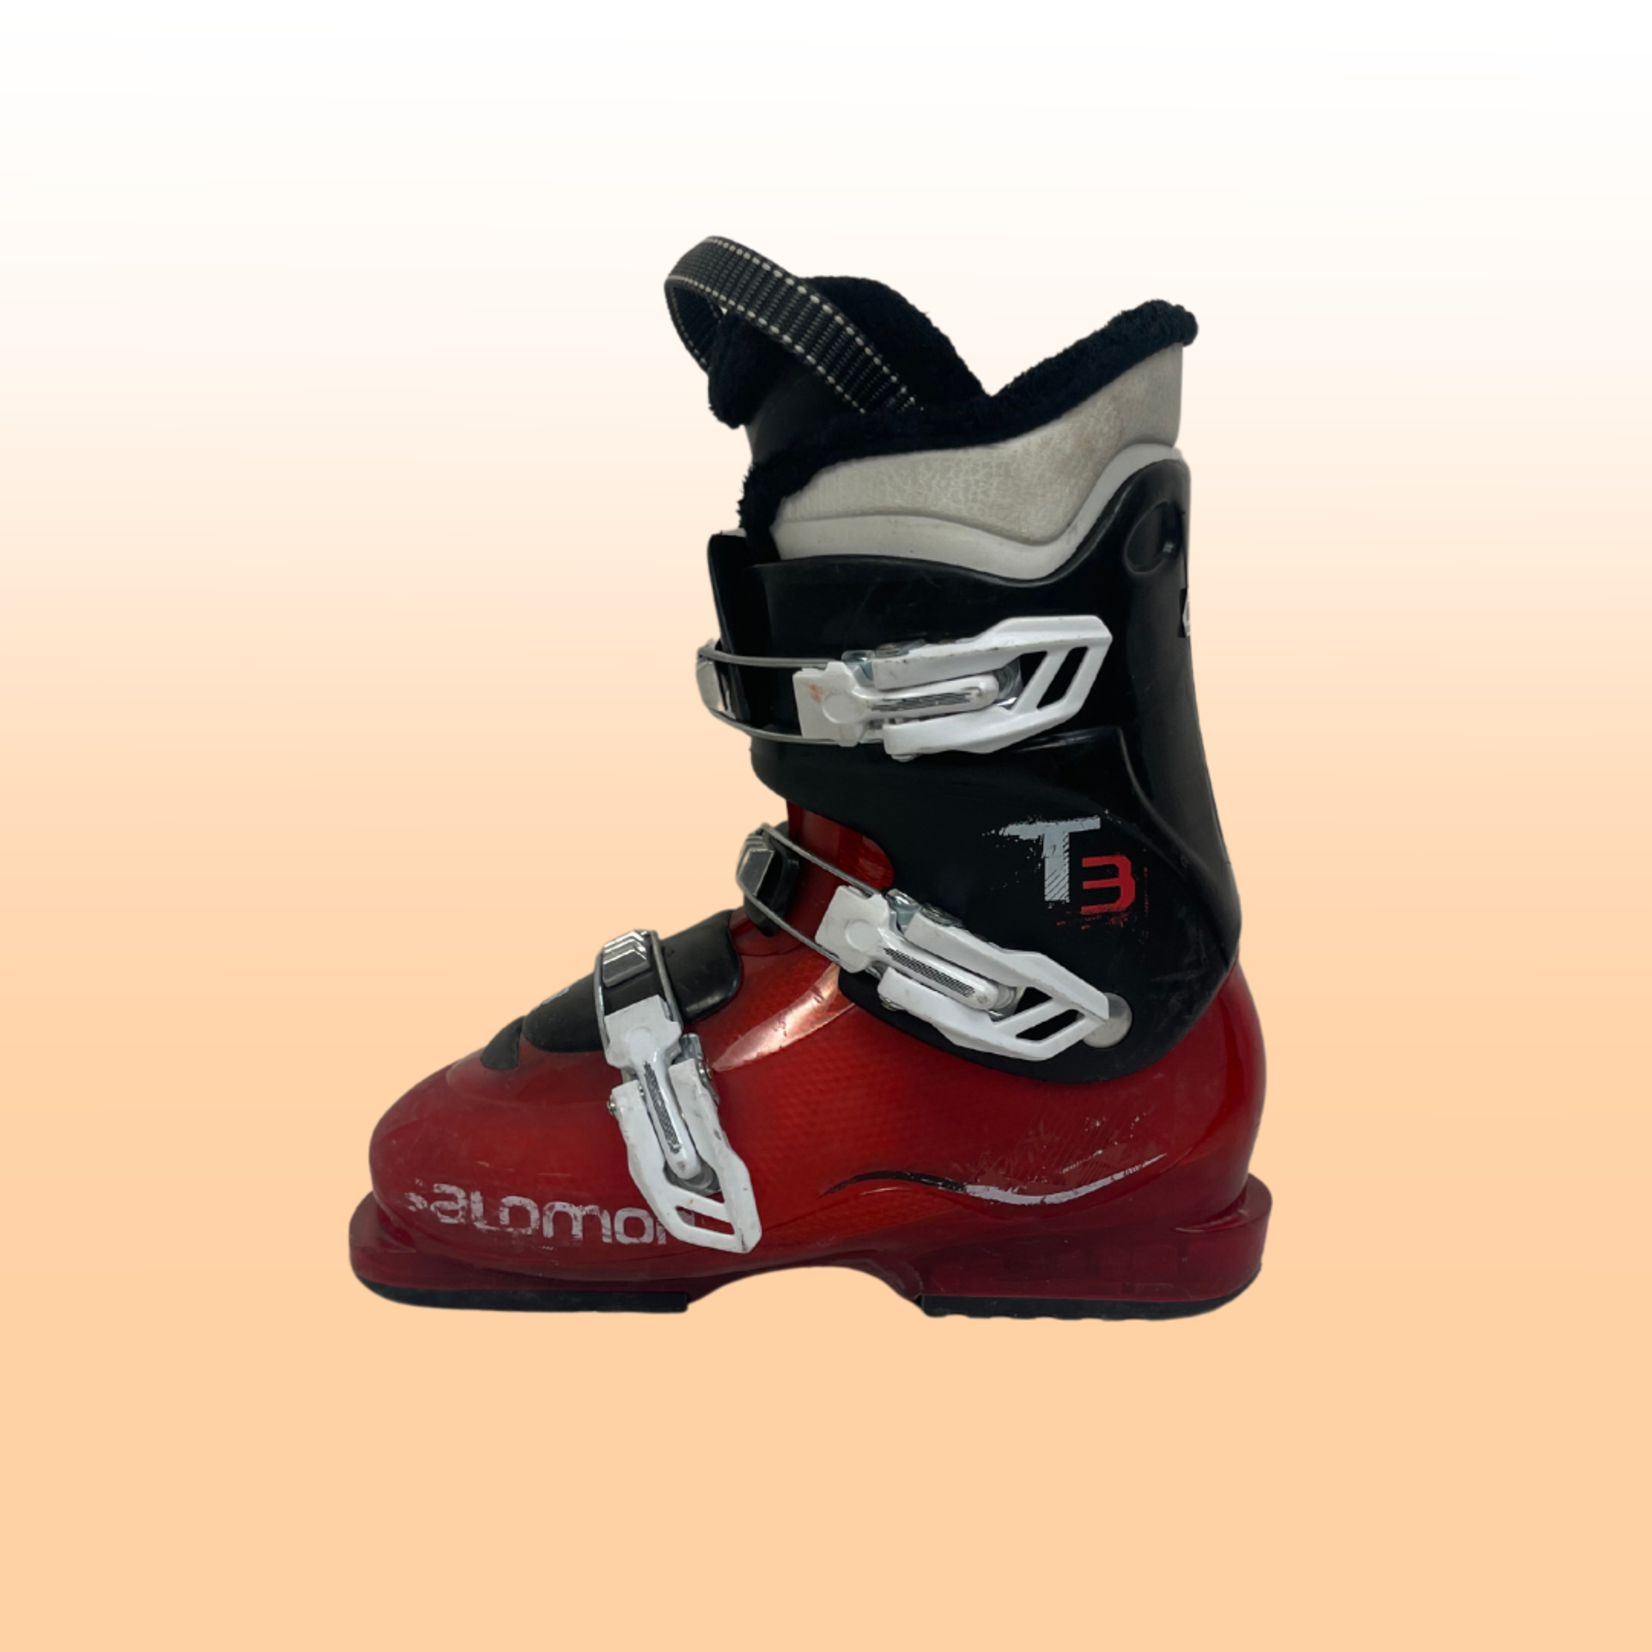 Salomon T3 Kids Ski Boots, Size 25/25.5